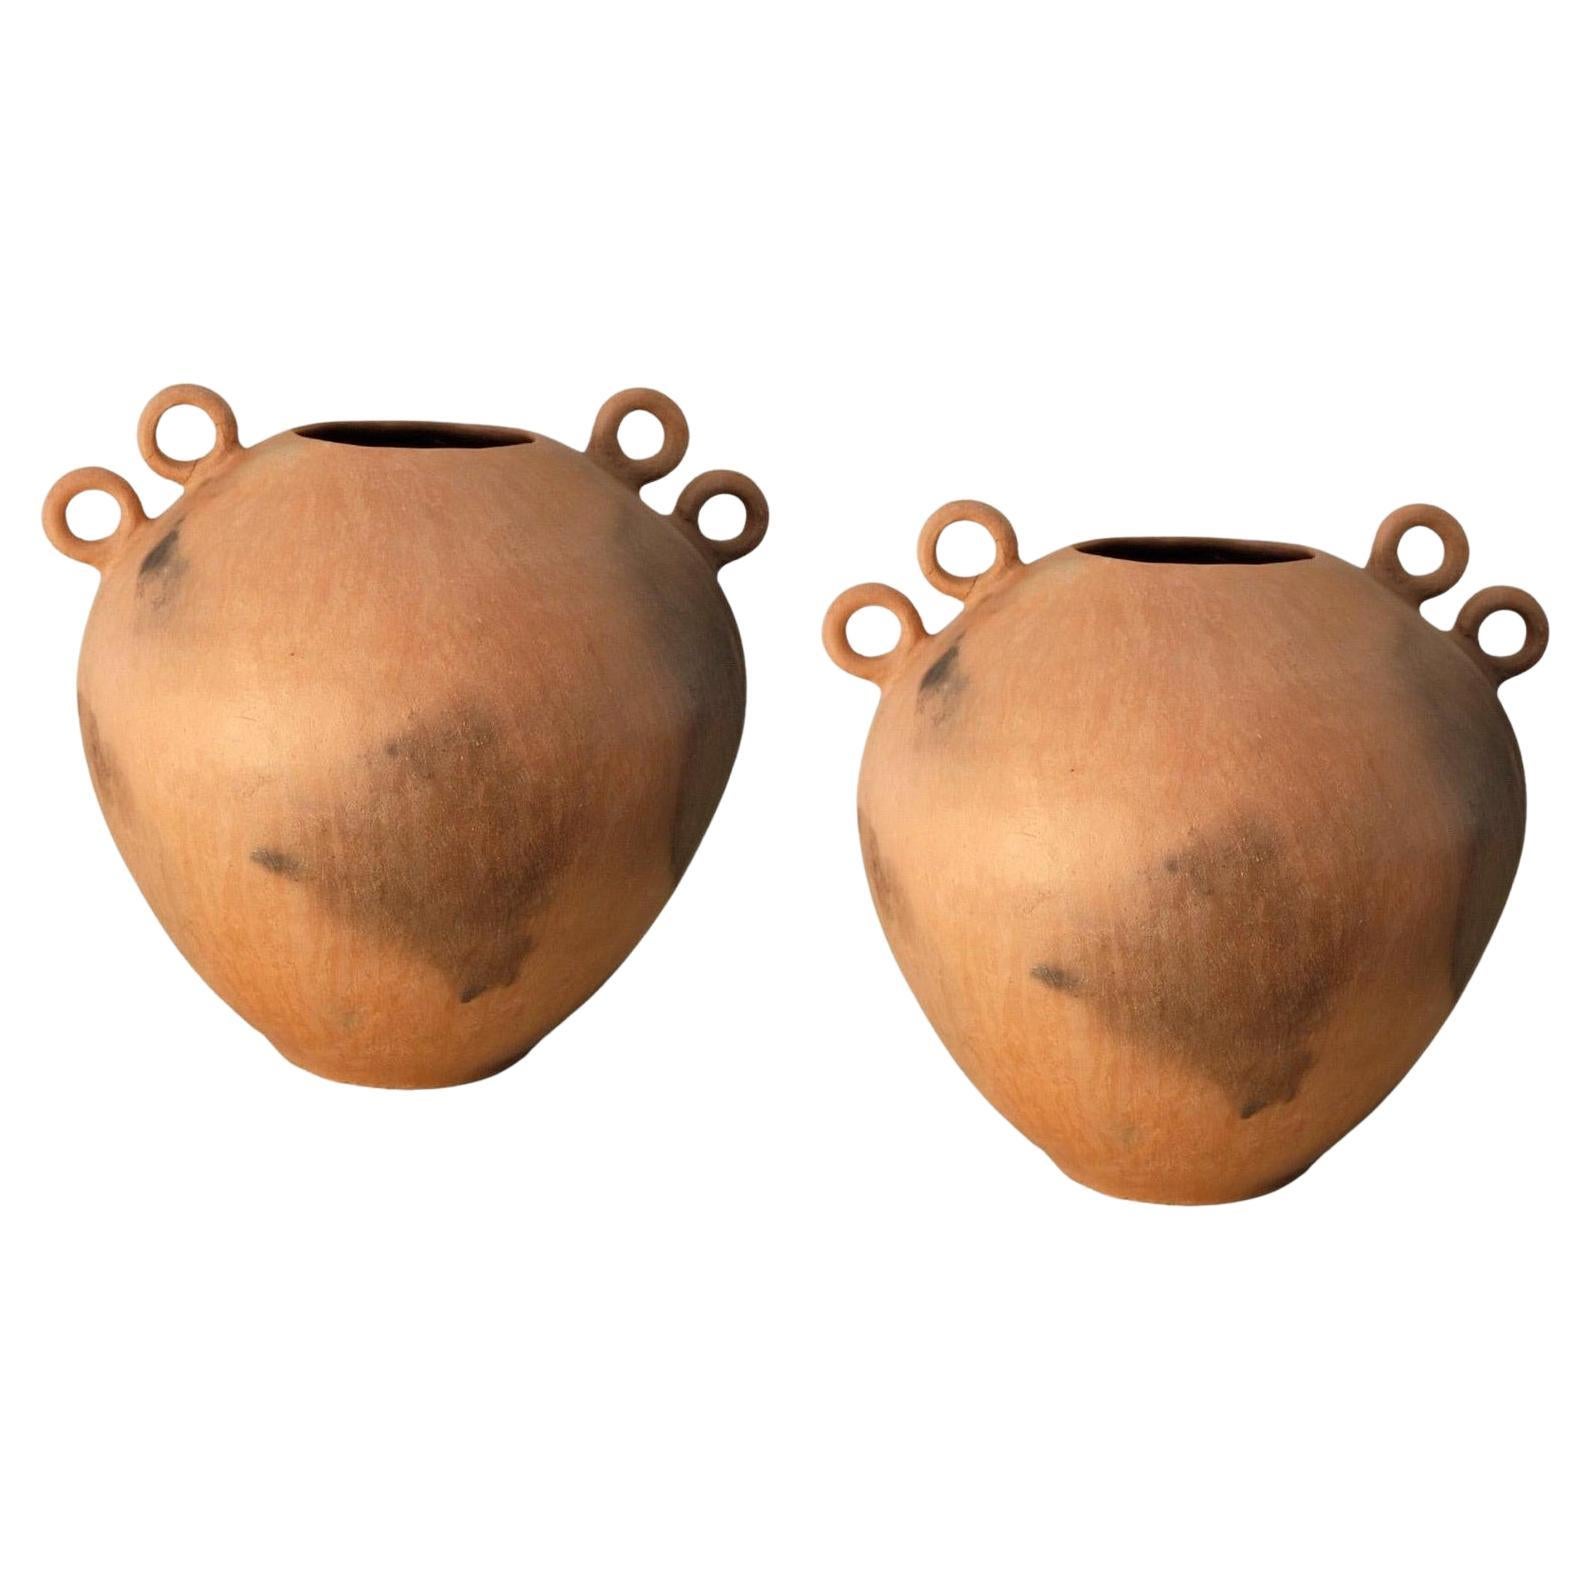 Ein Paar Tierra Caliente-Vasen von Onora